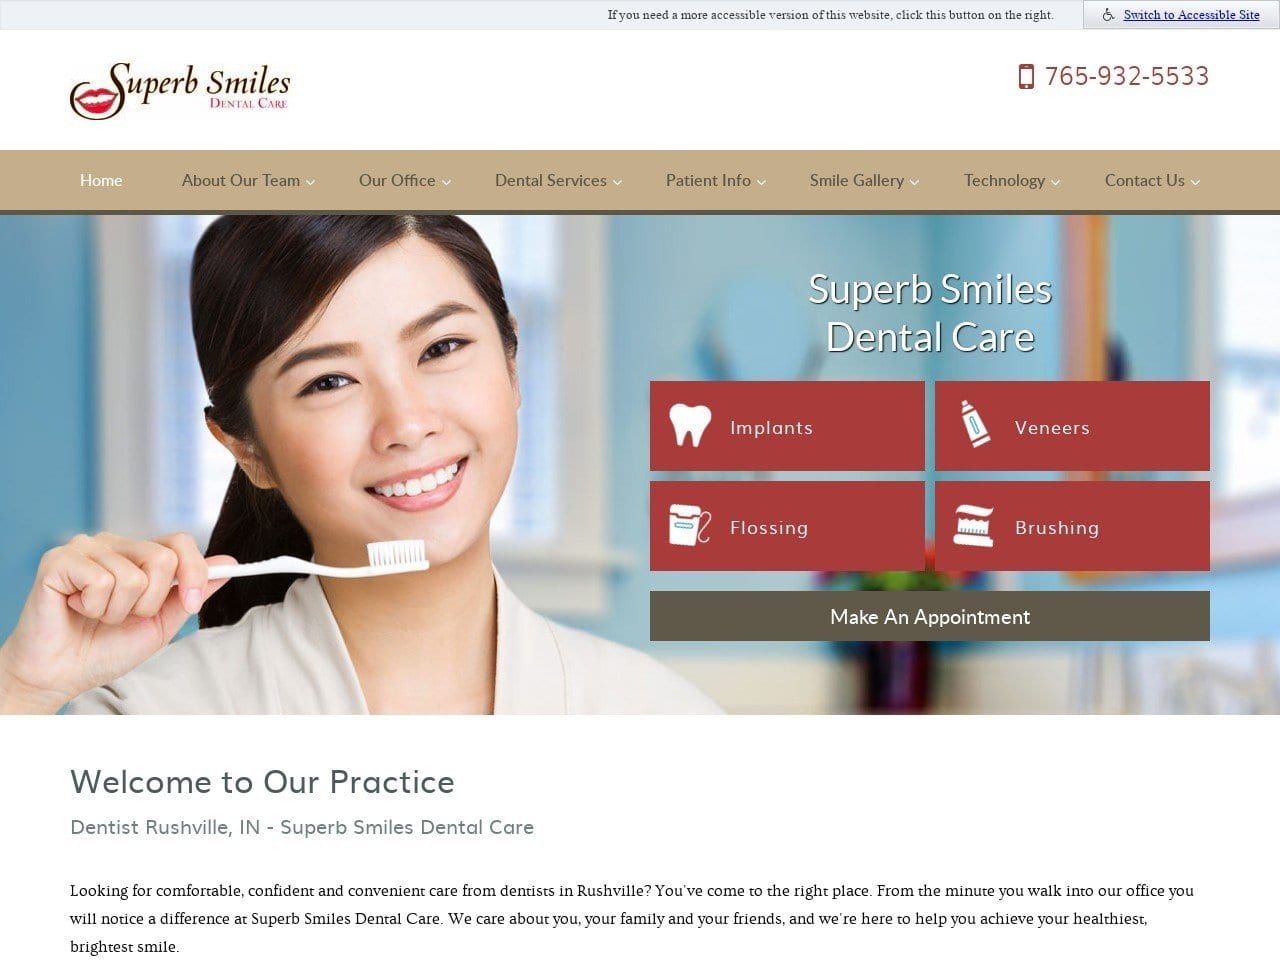 Superb Smiles Dental Care Website Screenshot from superbsmiles.net